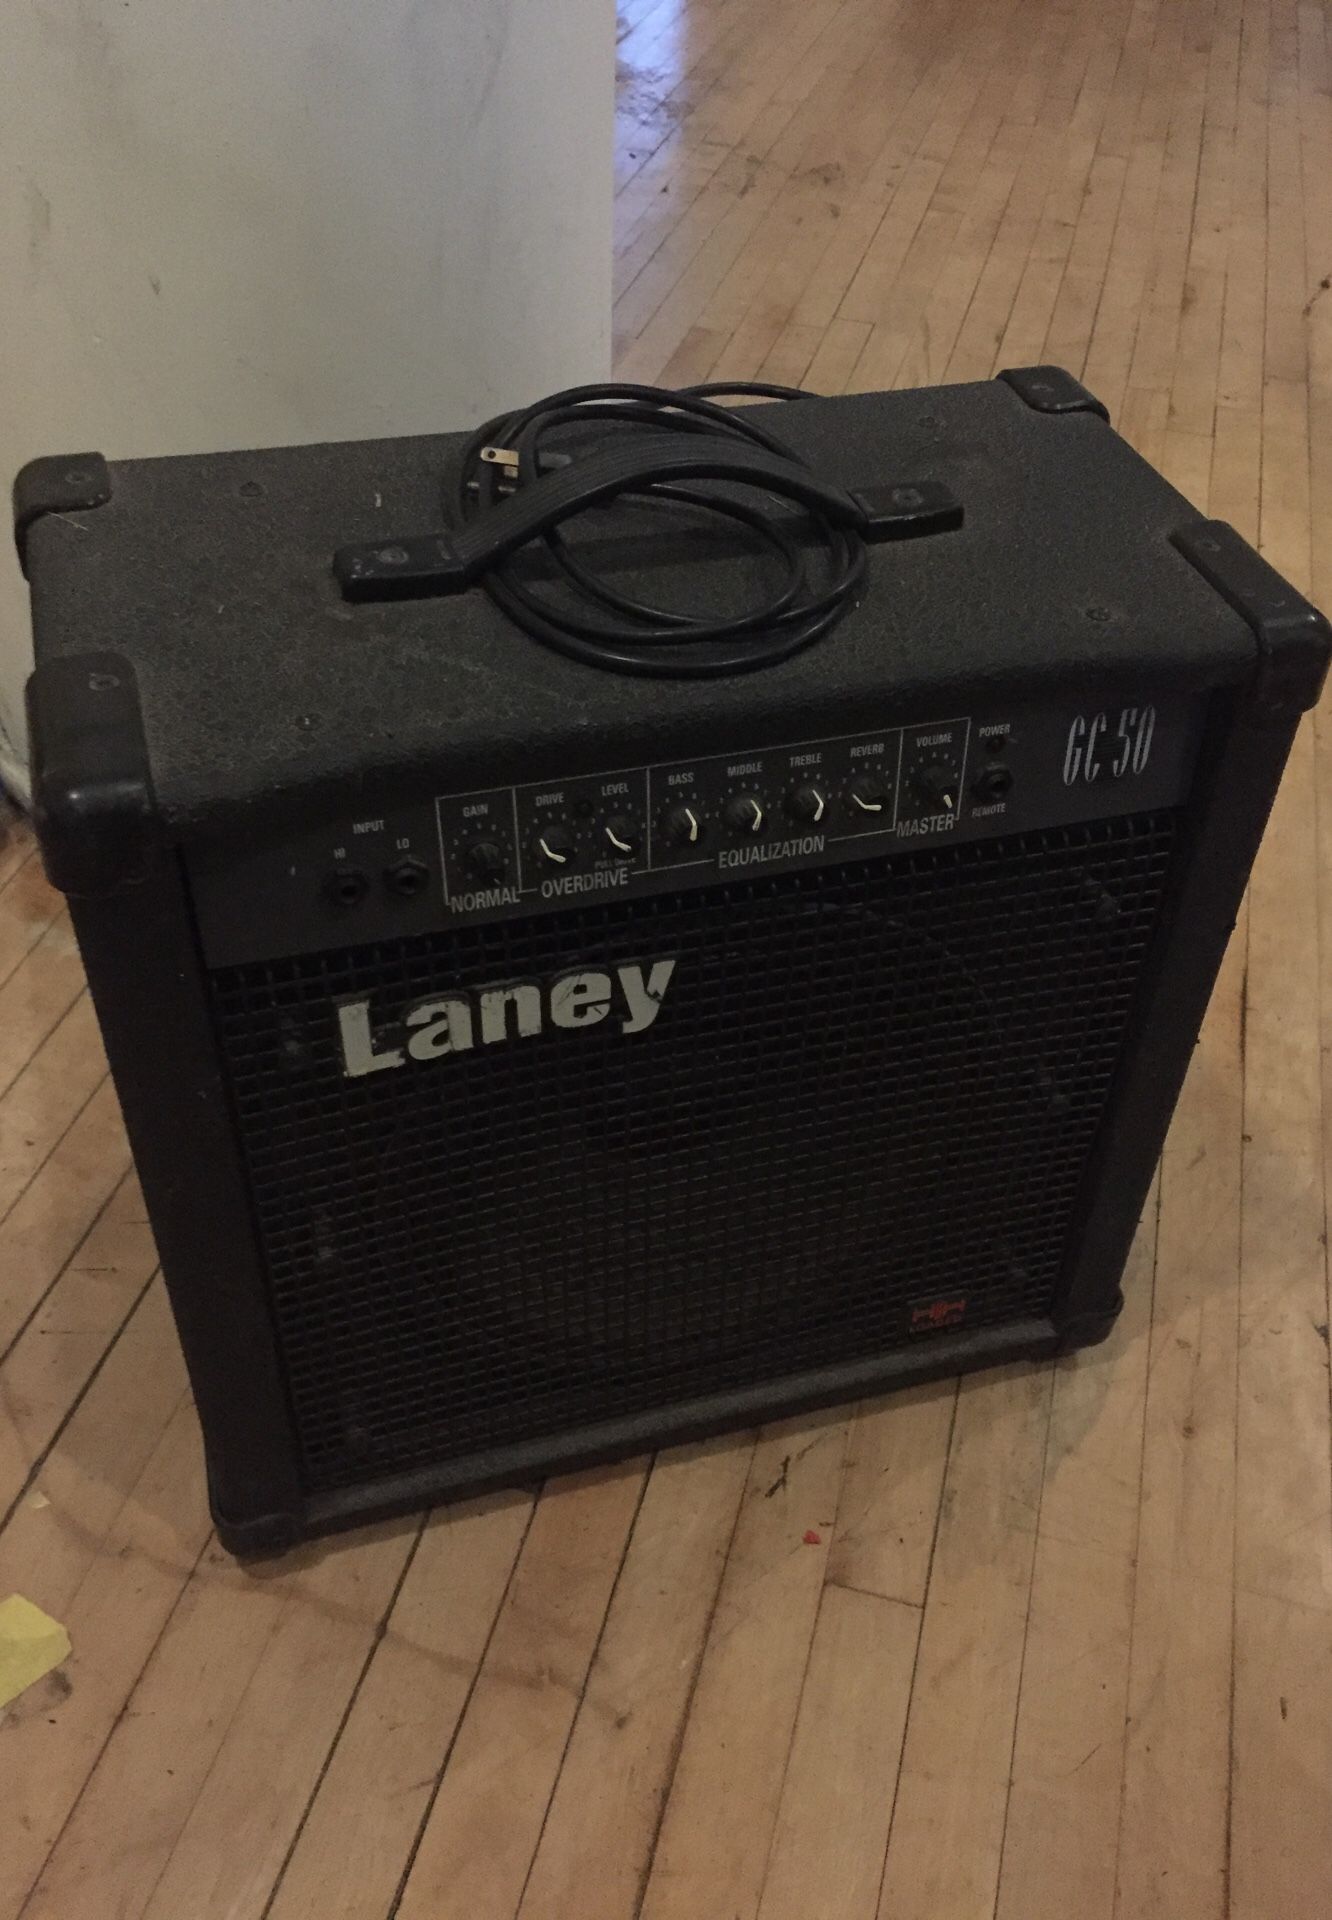 Laney guitar amp